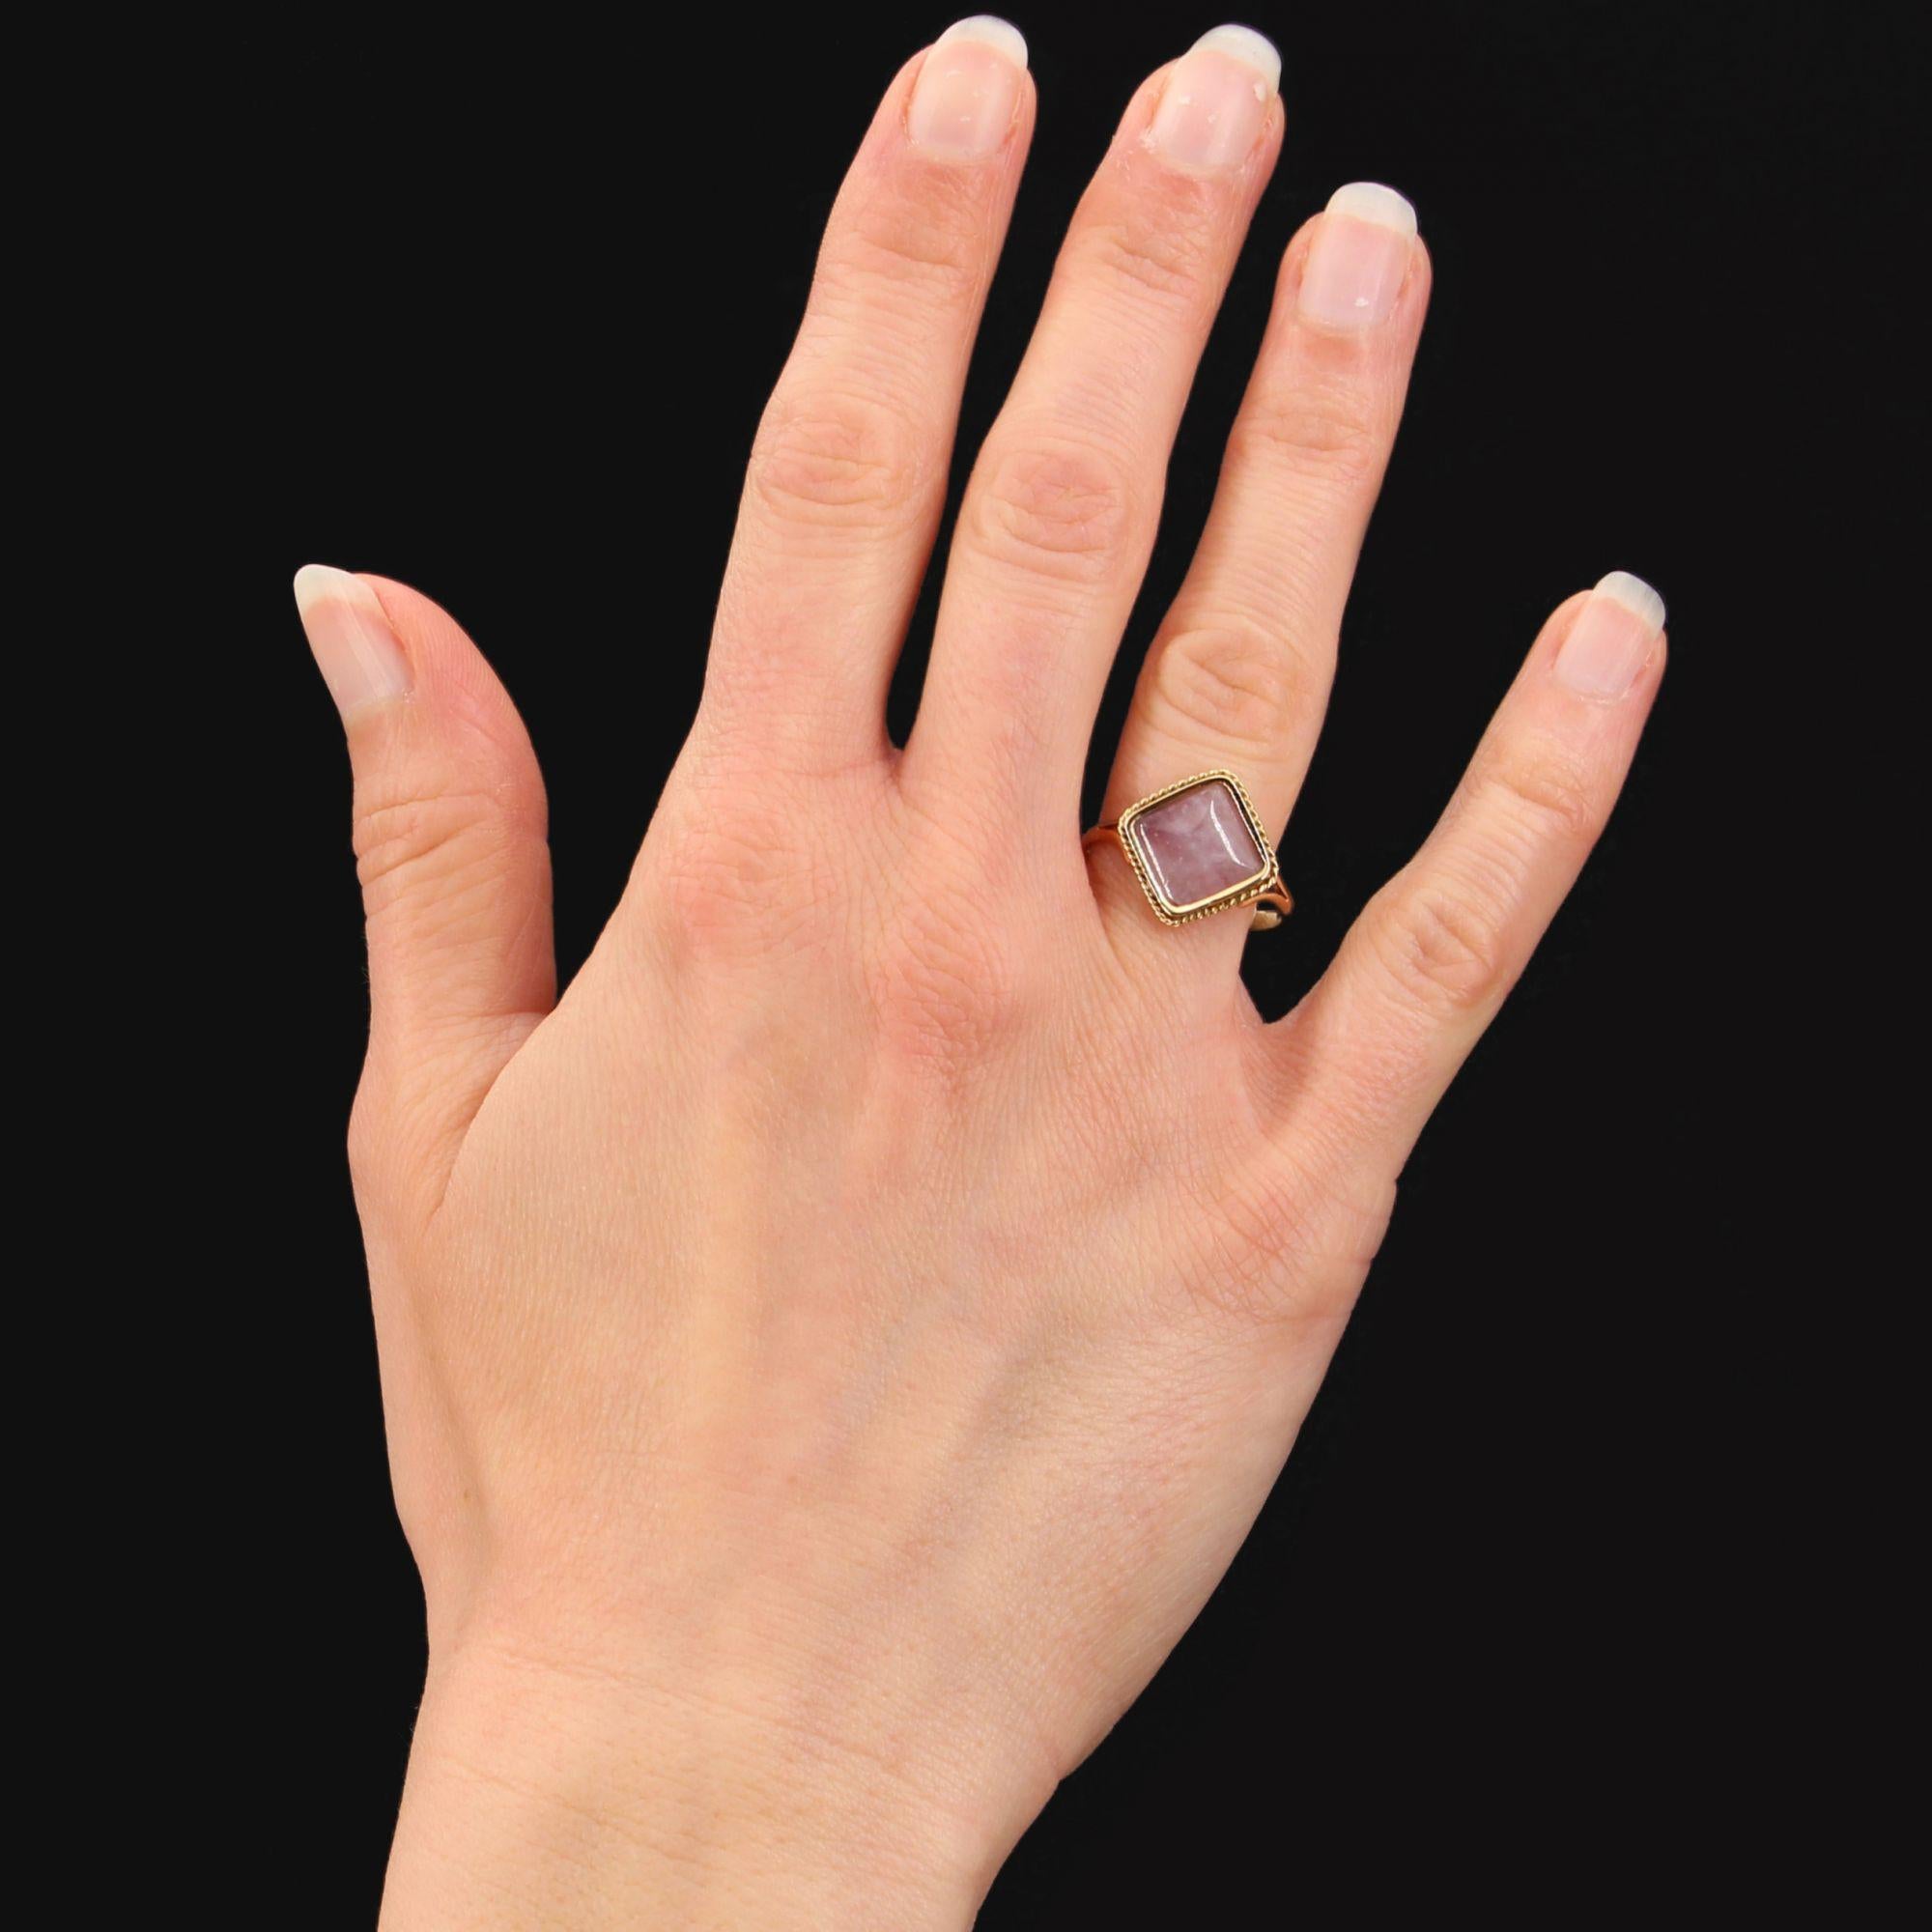 Ring aus 18 Karat Gelbgold, Adlerkopfpunze.
Dieser dünne antike Ring in Form eines Diamanten ist mit einem zuckerhutförmigen Cabochon-Amethysten verziert, der von einem Goldfaden umgeben ist.
Höhe: 15 mm, Breite: 15 mm, Dicke: 3,5 mm, Breite des